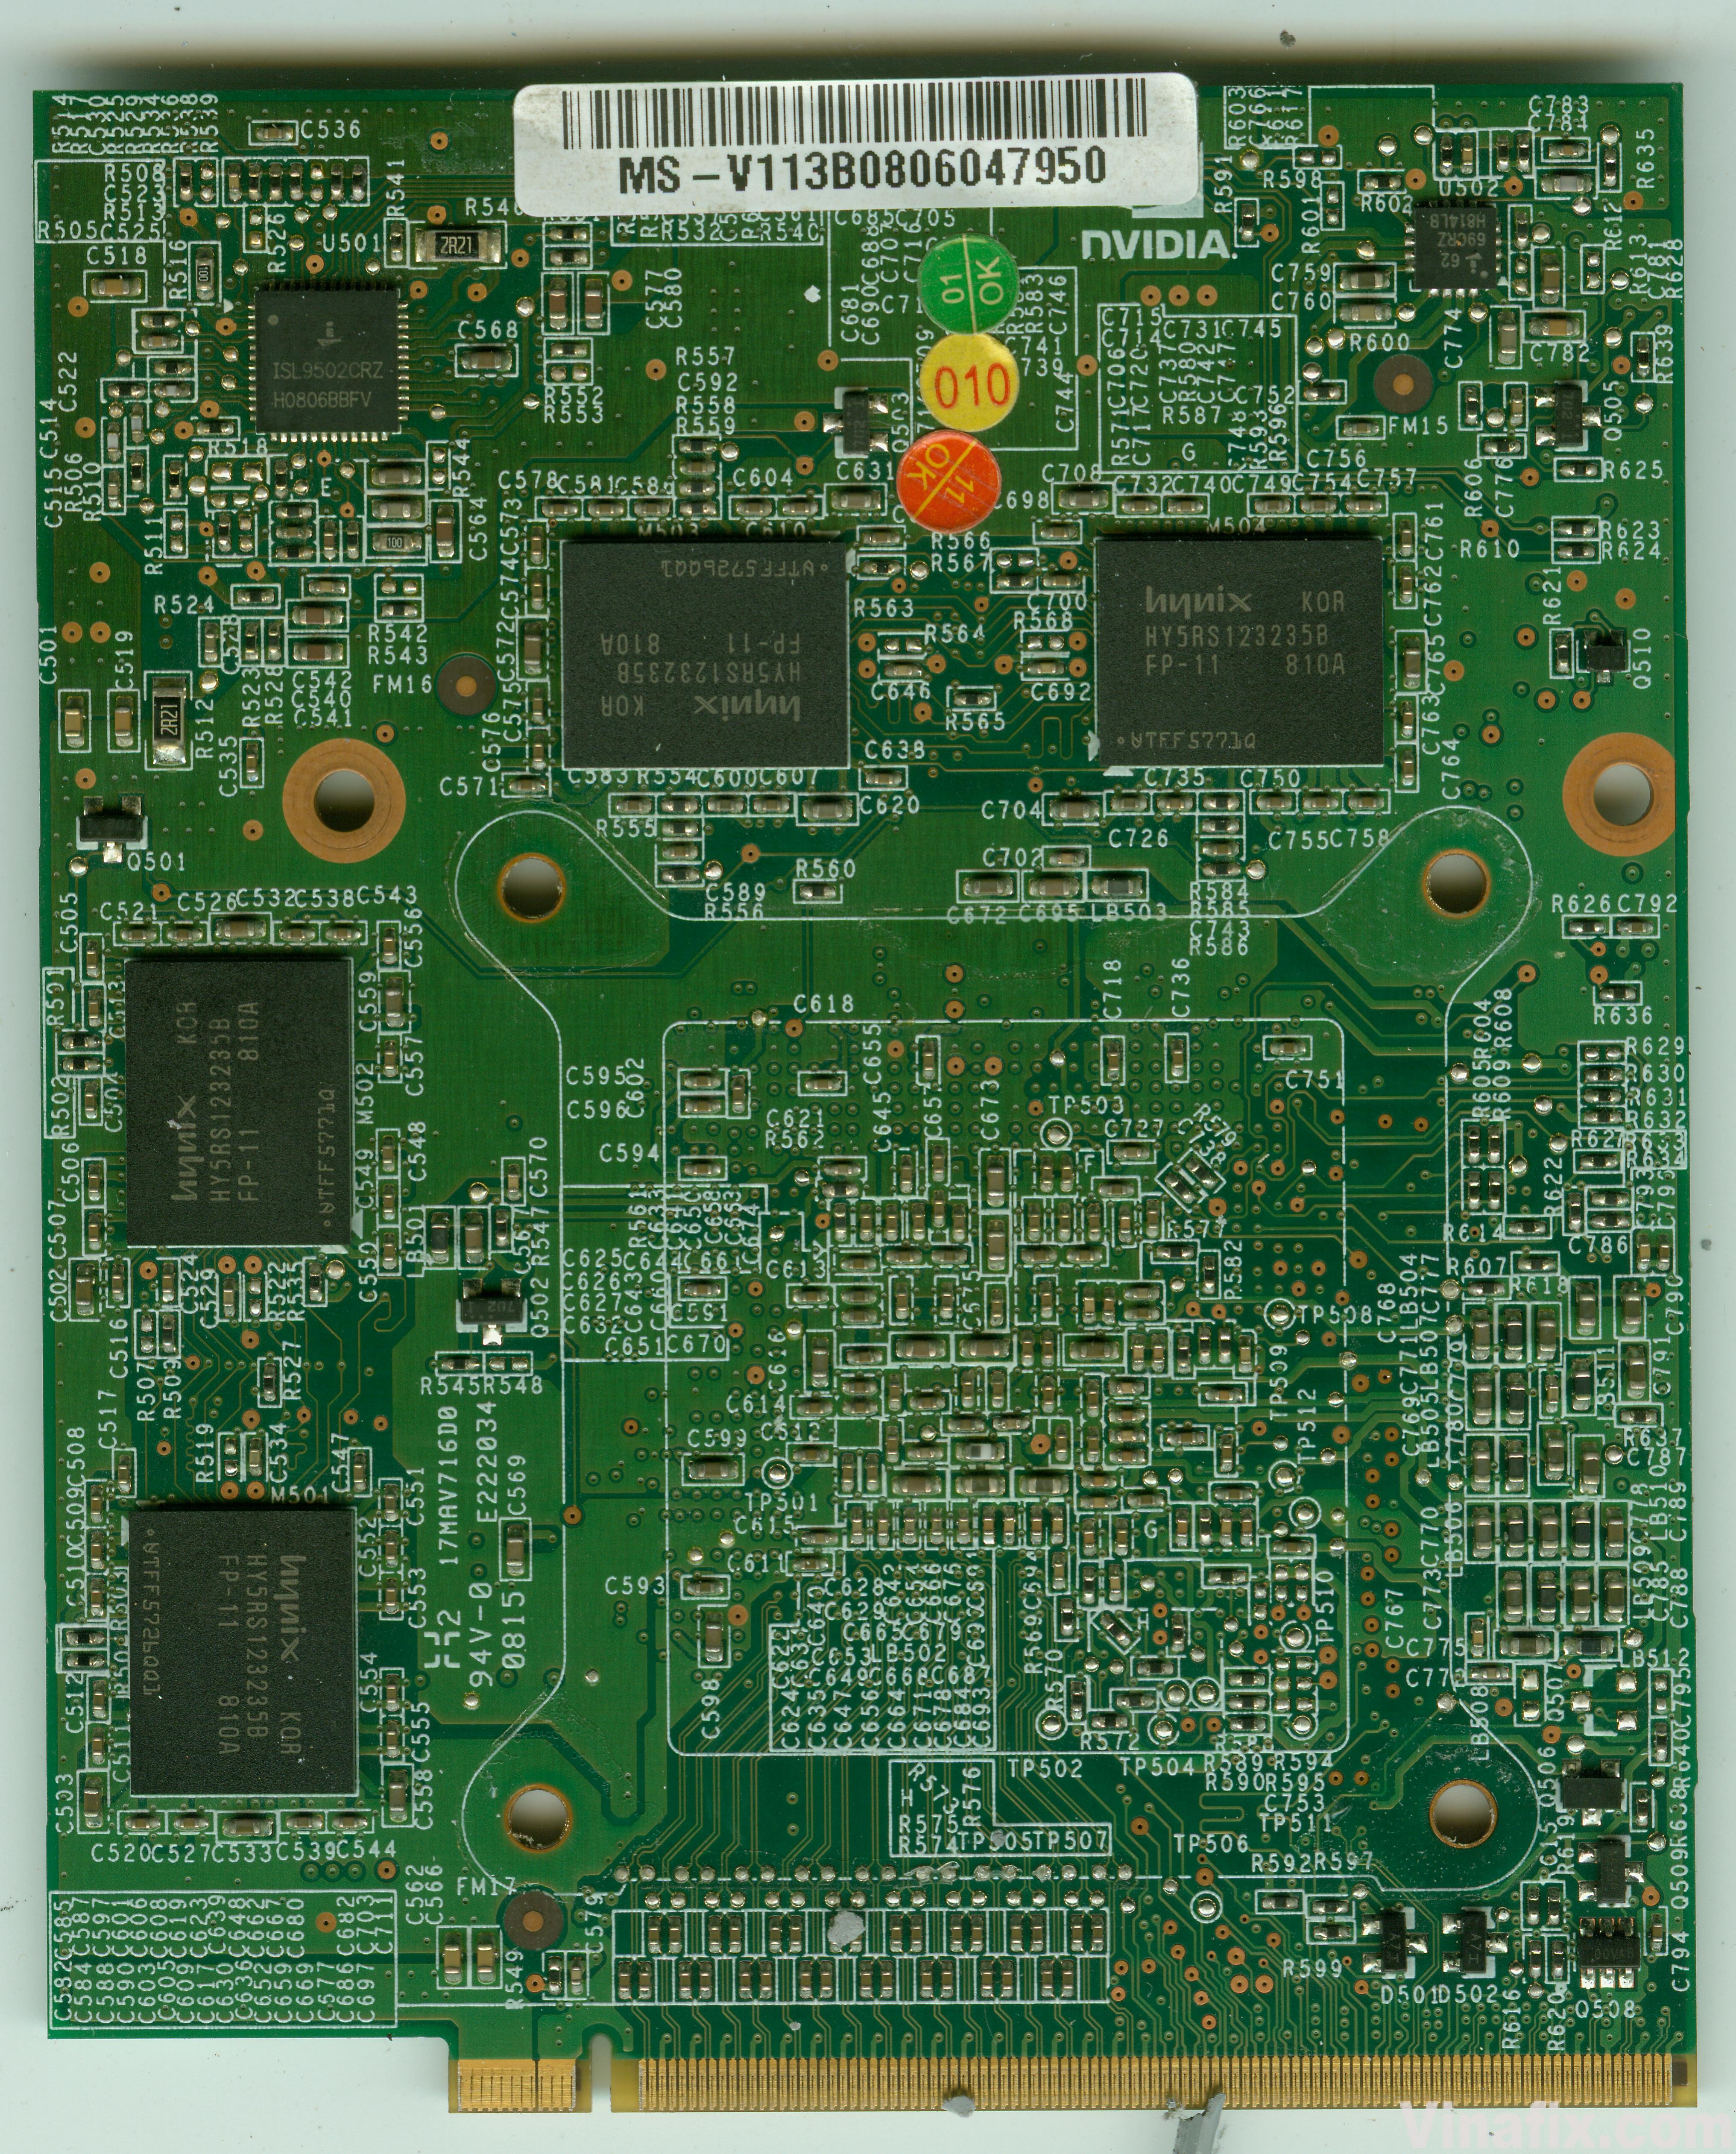 Nvidia V113 VER 2.1 - VG.8ES06.001(G84-725-A2) - Acer Aspire 8920G B